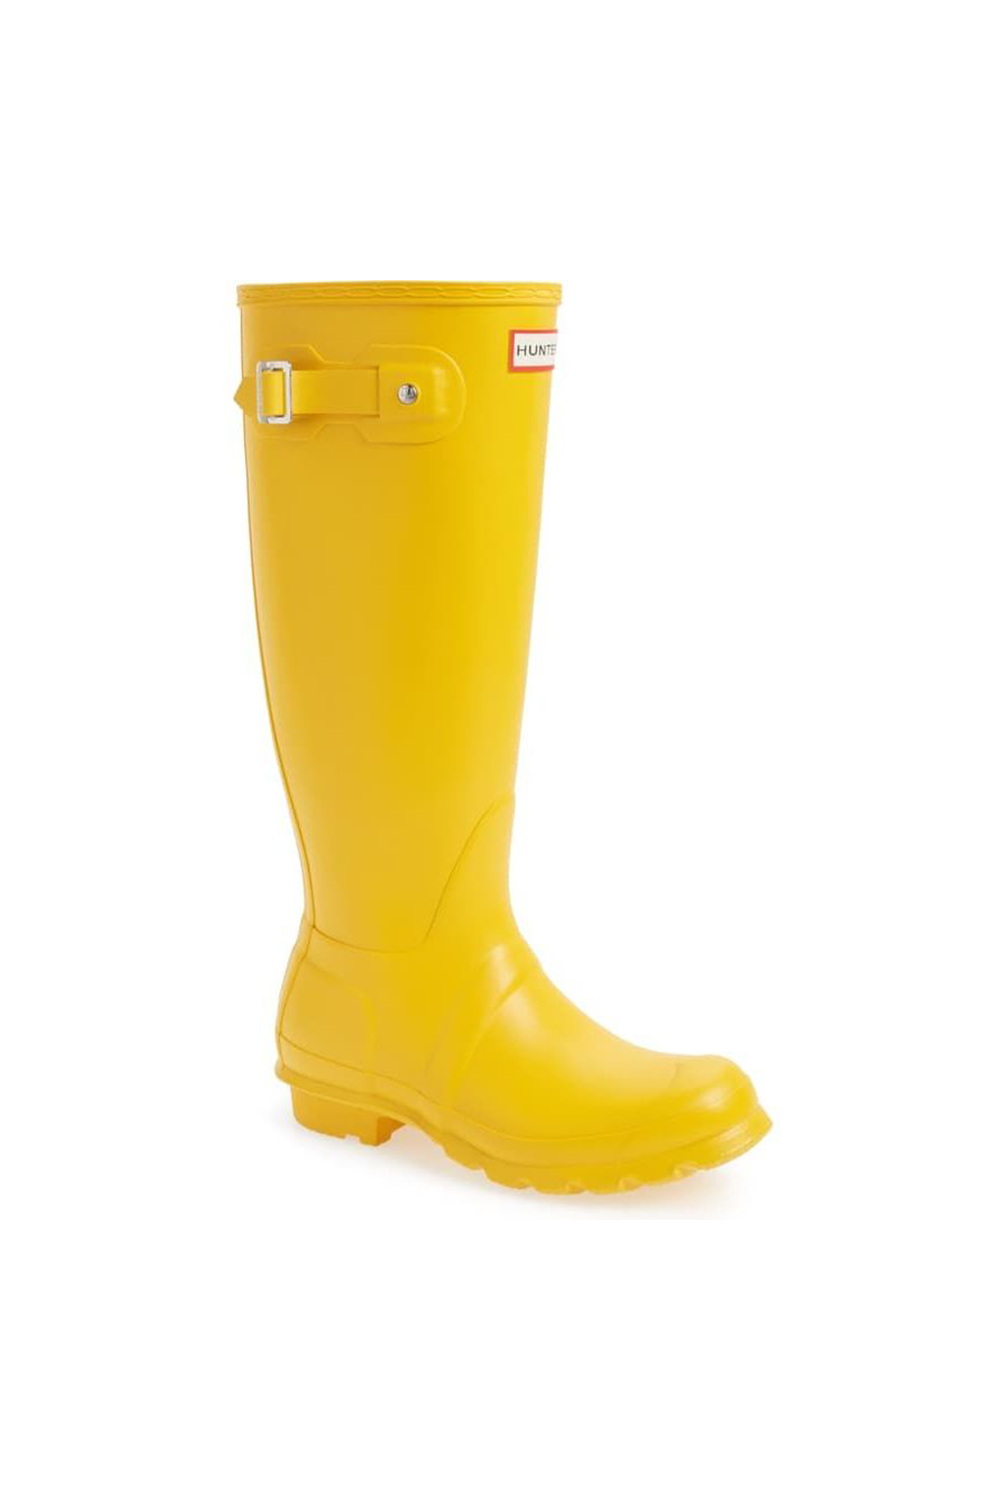 rain boot brands list